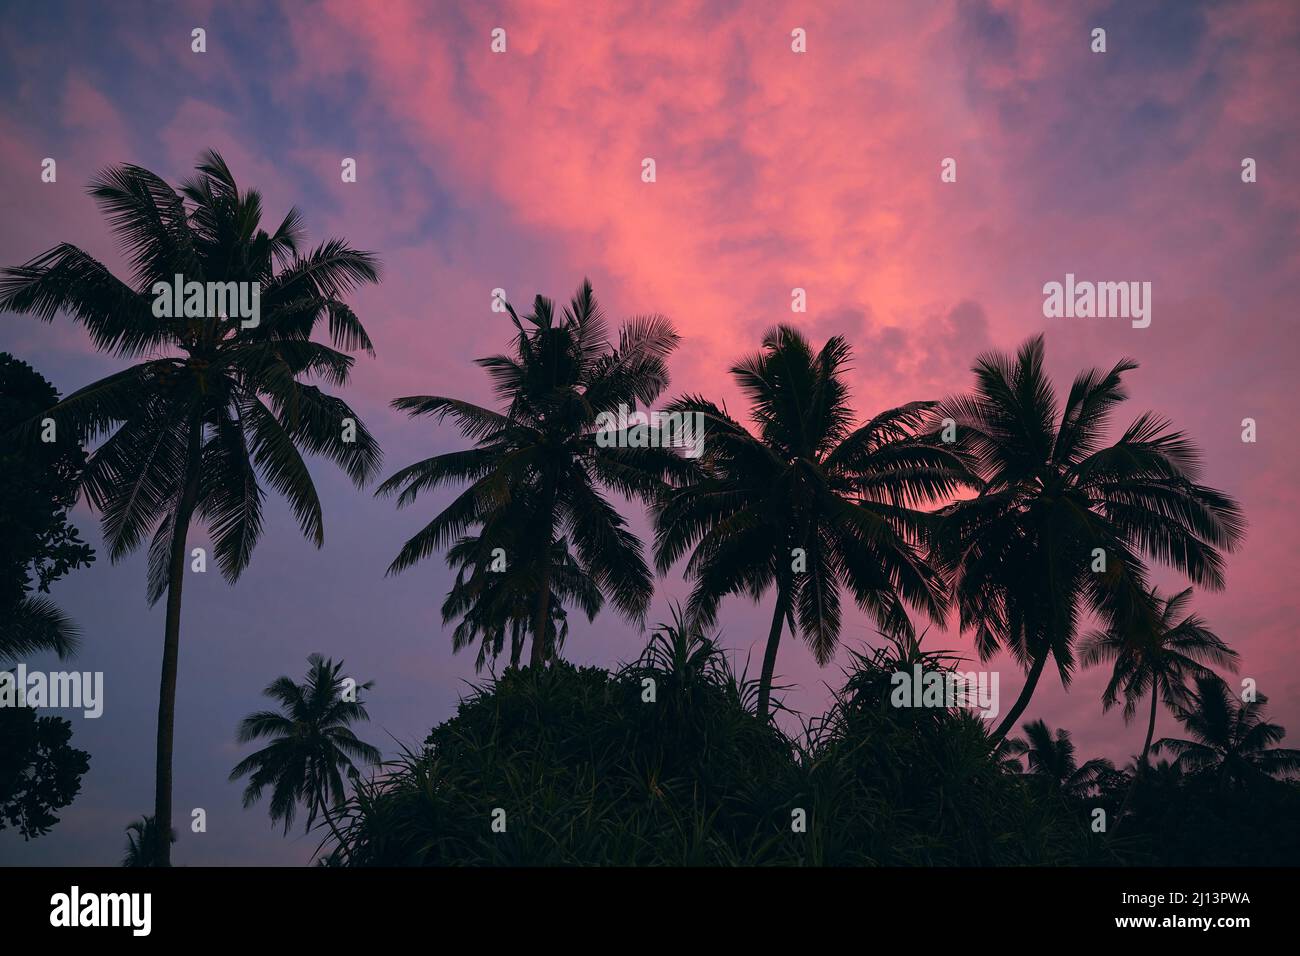 Silhouettes de palmiers contre un ciel sombre avec des nuages rouges au crépuscule. La beauté dans la nature. Banque D'Images